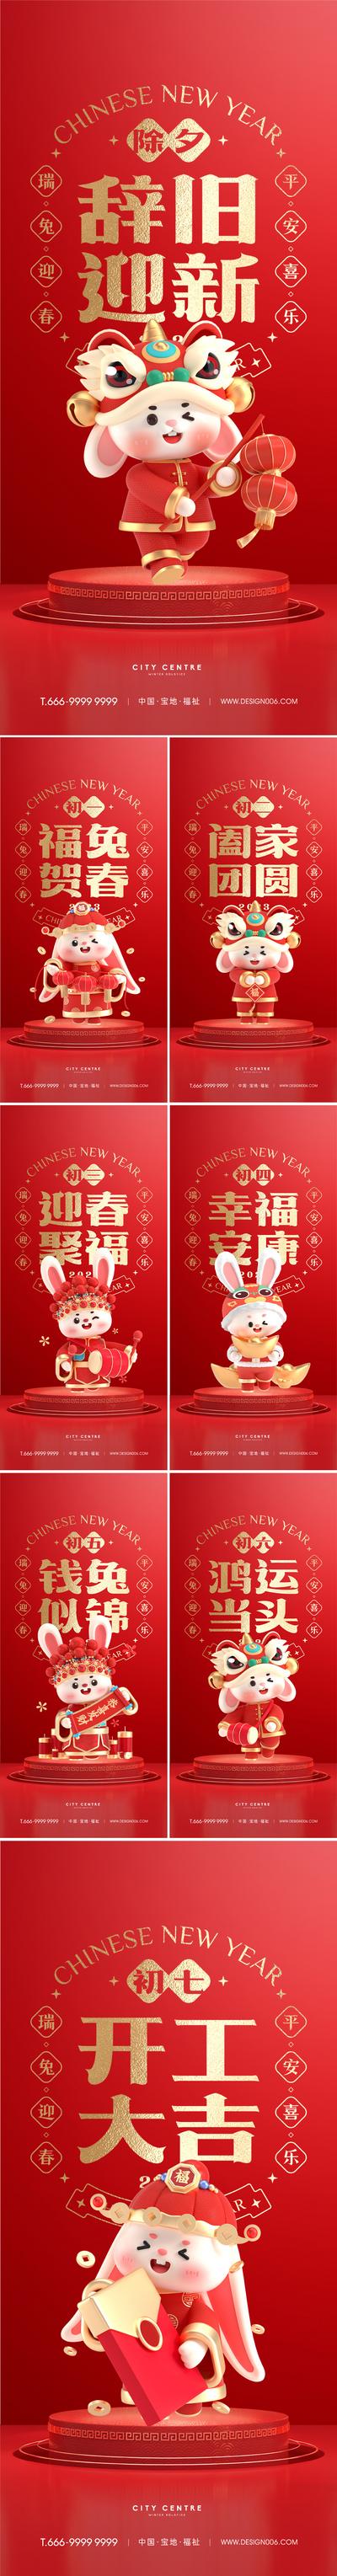 南门网 海报 房地产 中国传统节日 新 除夕 初一 兔年 兔子 年俗 系列